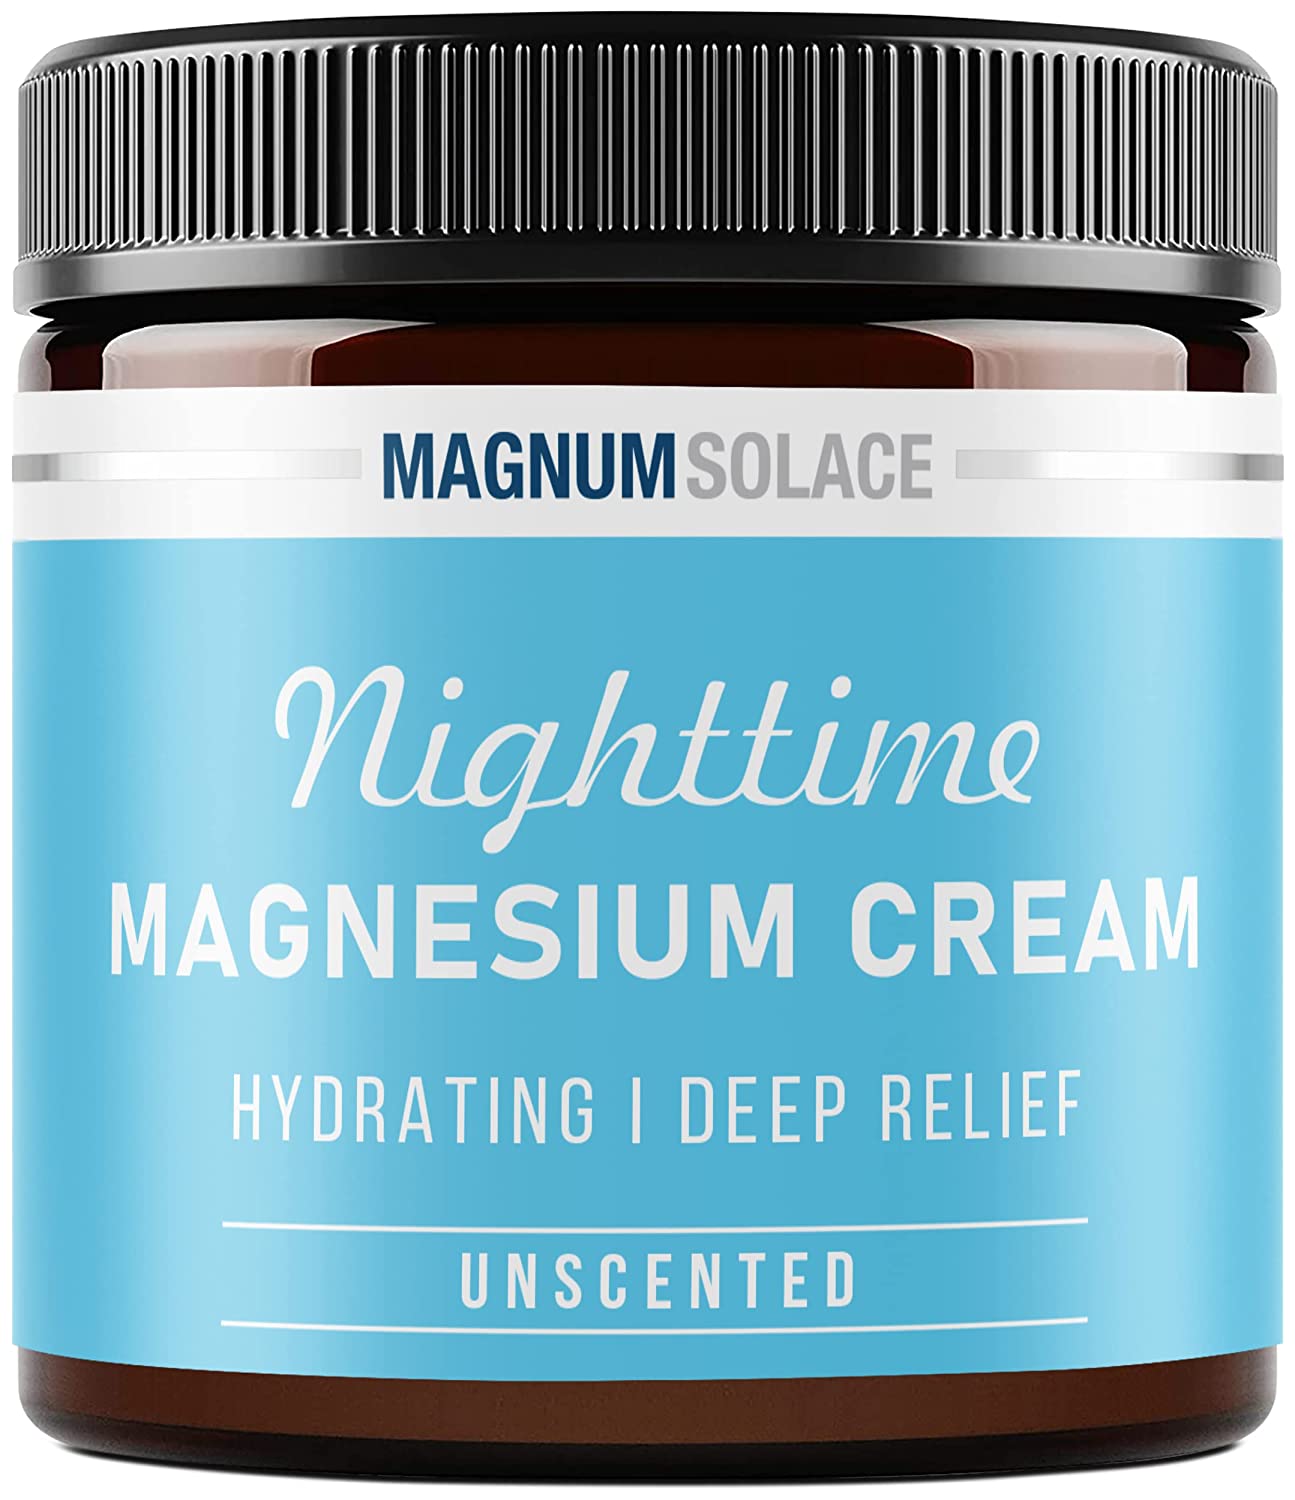 Magnesium from a cream